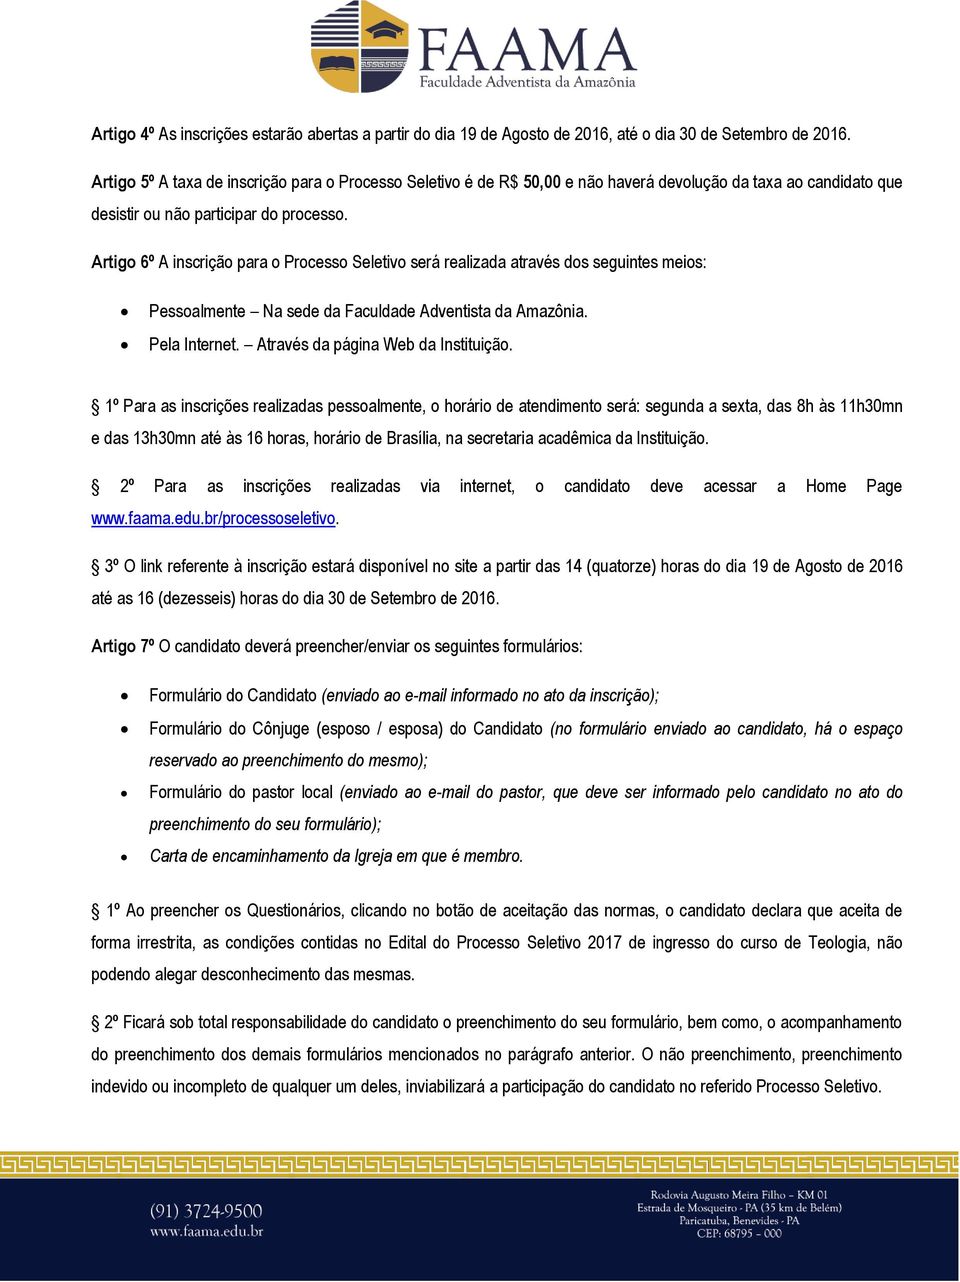 Artigo 6º A inscrição para o Processo Seletivo será realizada através dos seguintes meios: Pessoalmente Na sede da Faculdade Adventista da Amazônia. Pela Internet.